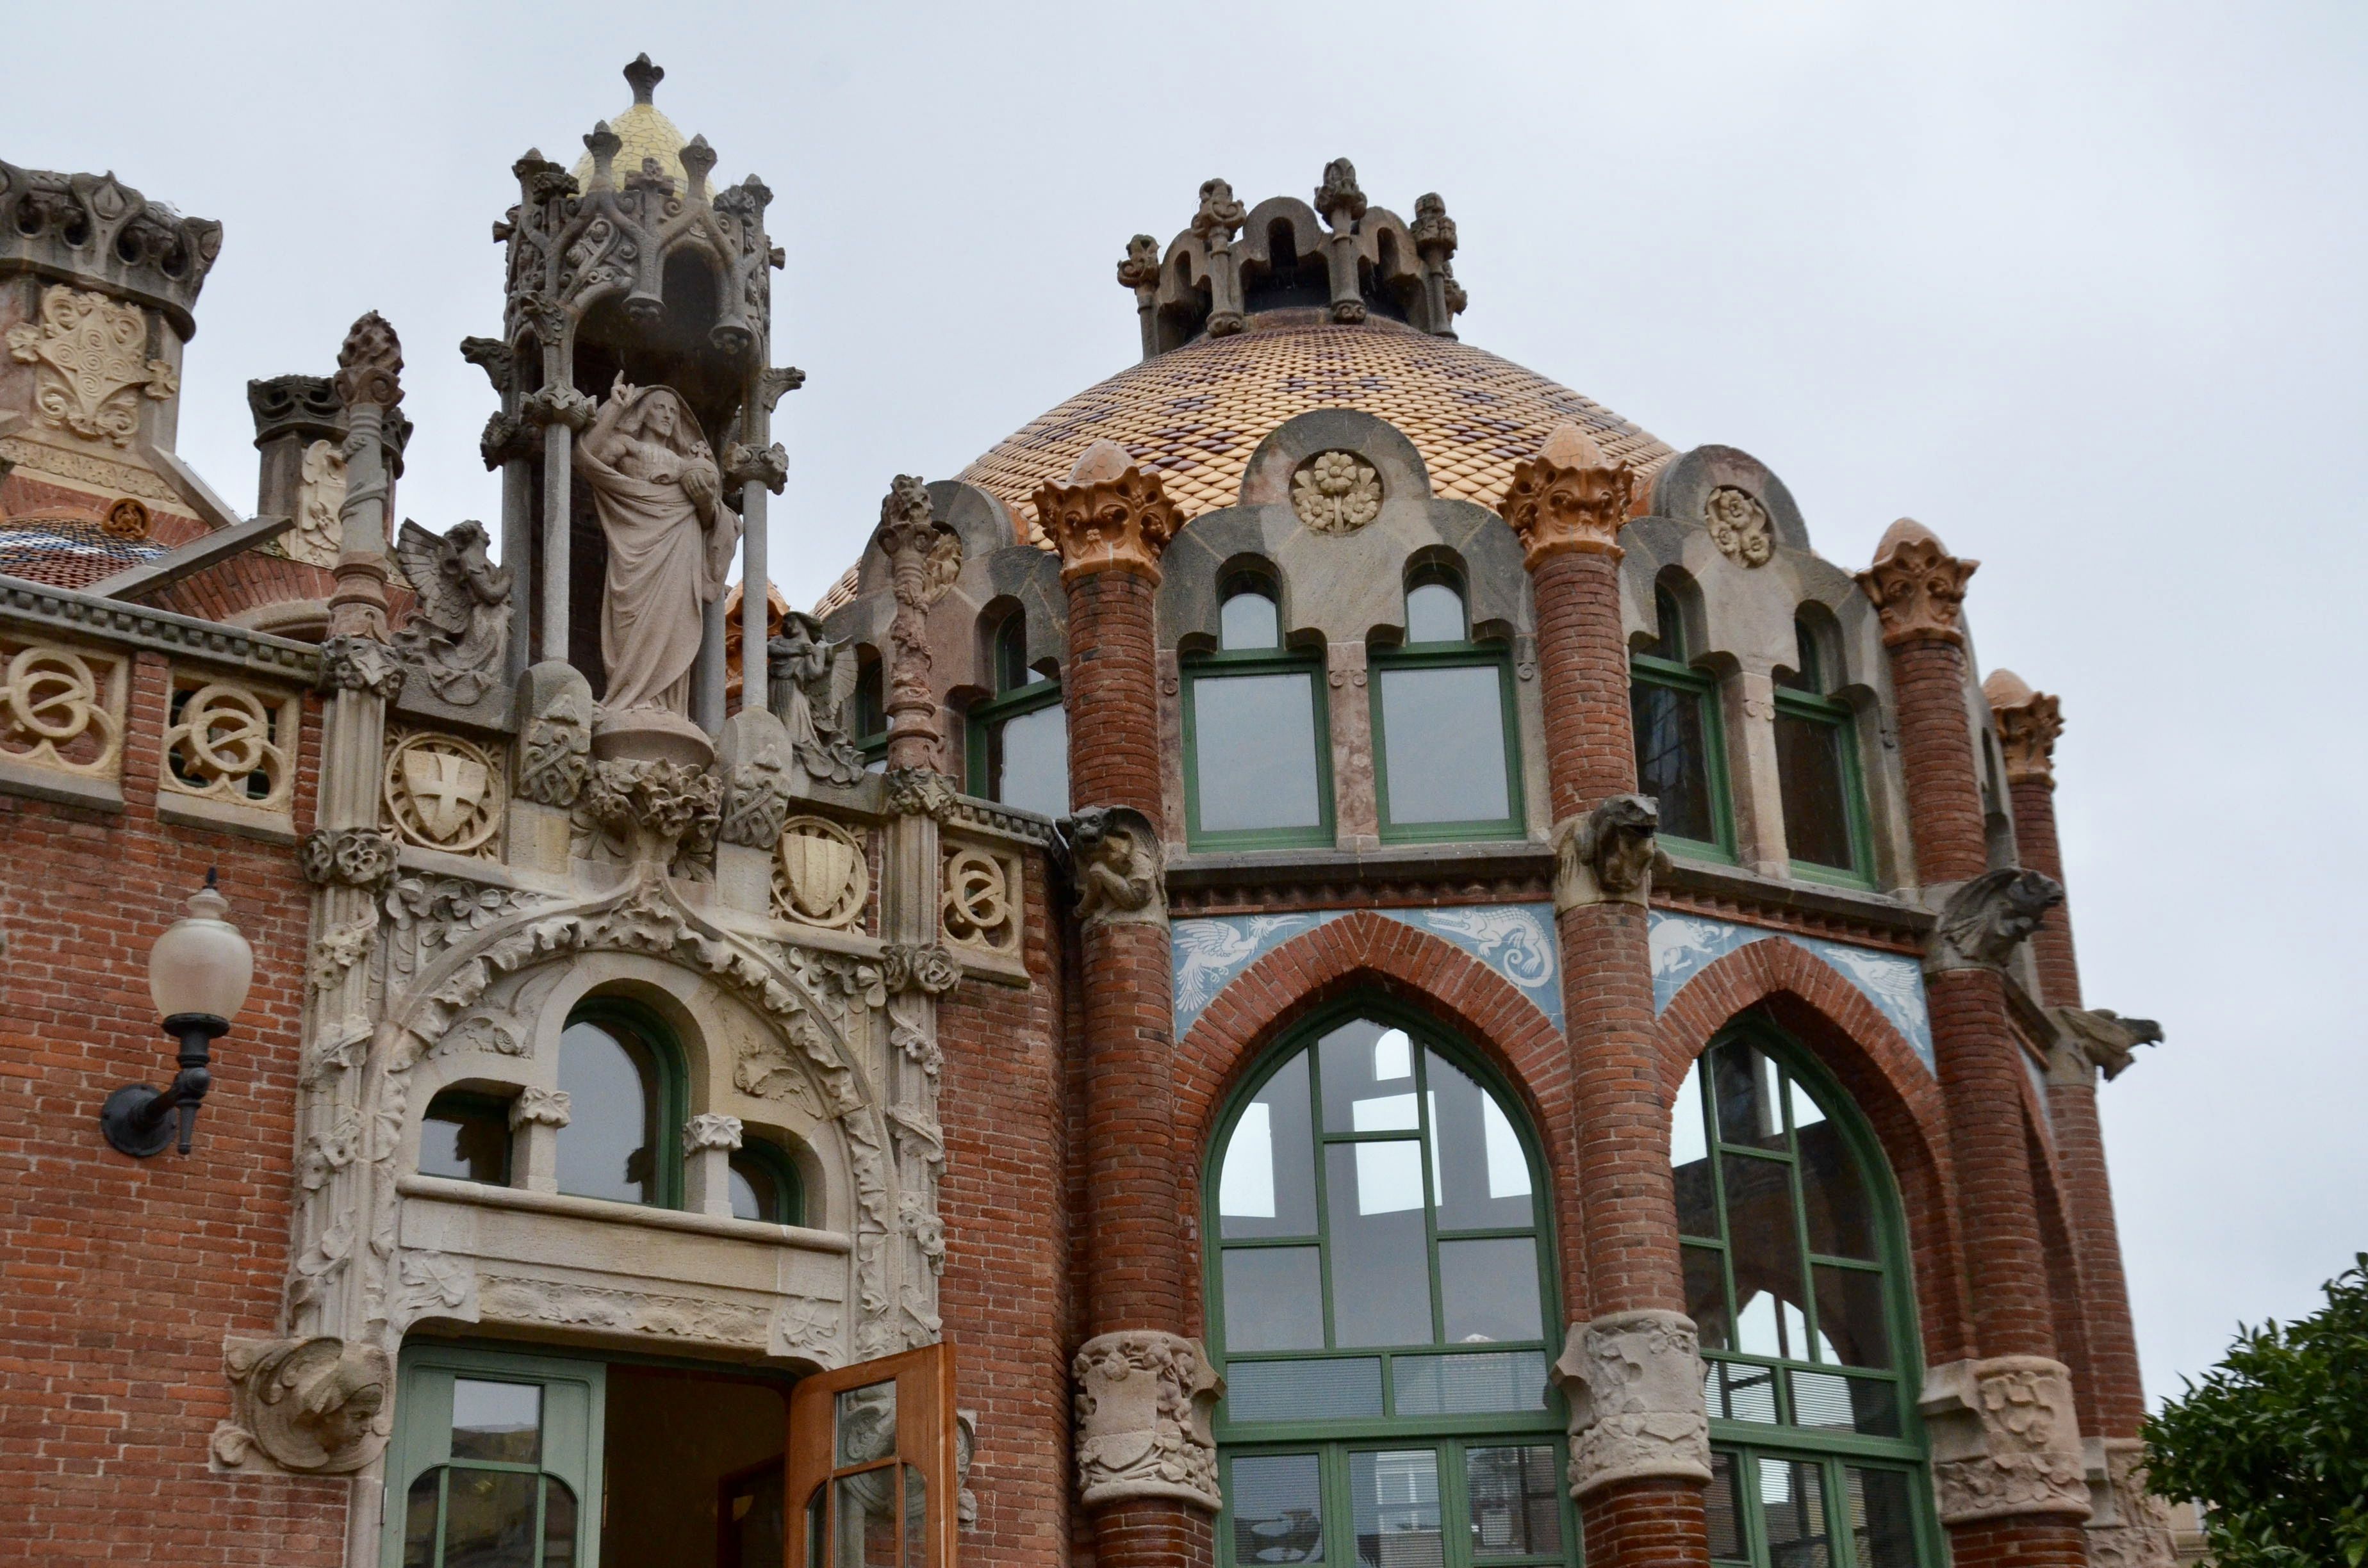 Sant Pau Art Nouveau Site, Barcelona: All year